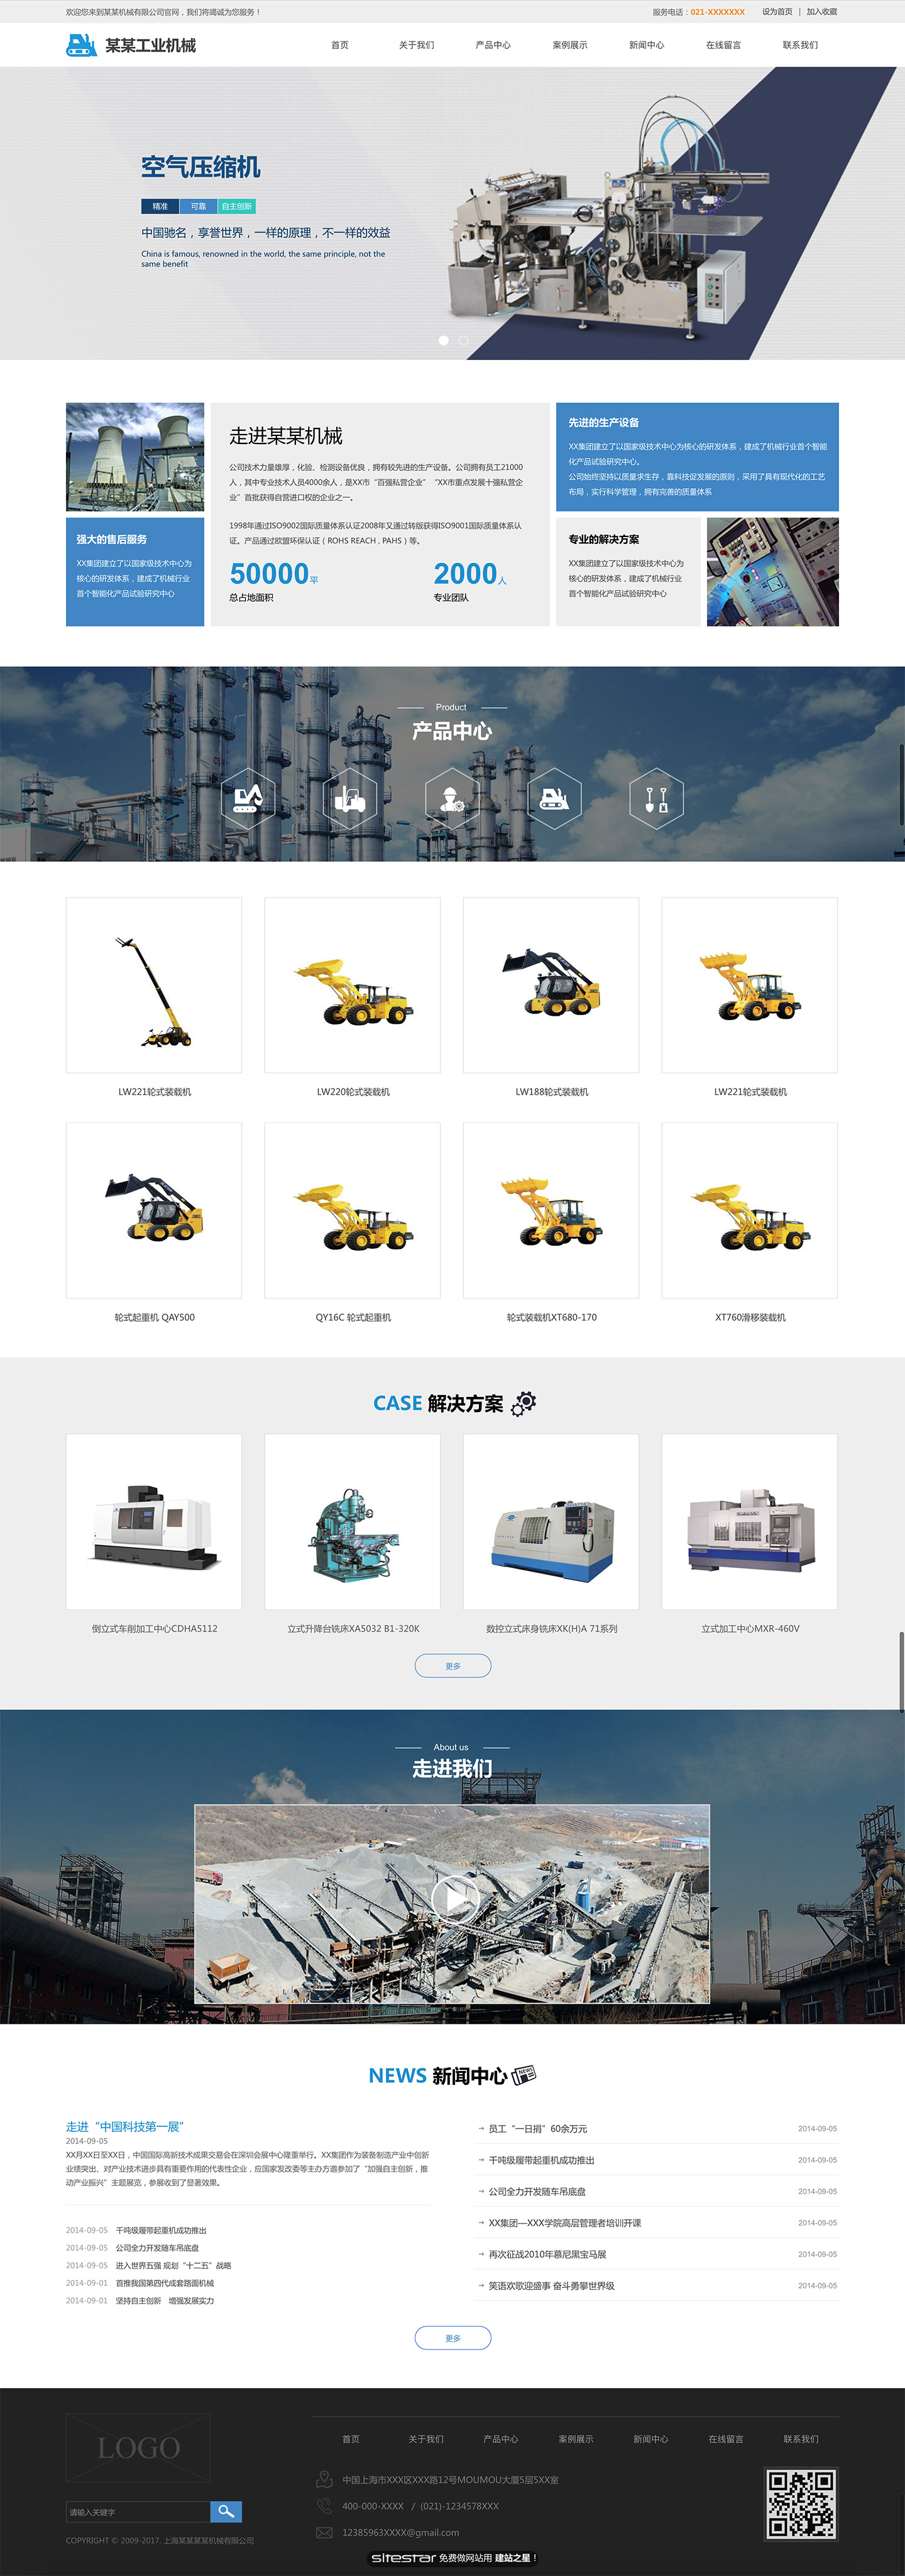 机械、工业制品网站模板-industrial-1353614